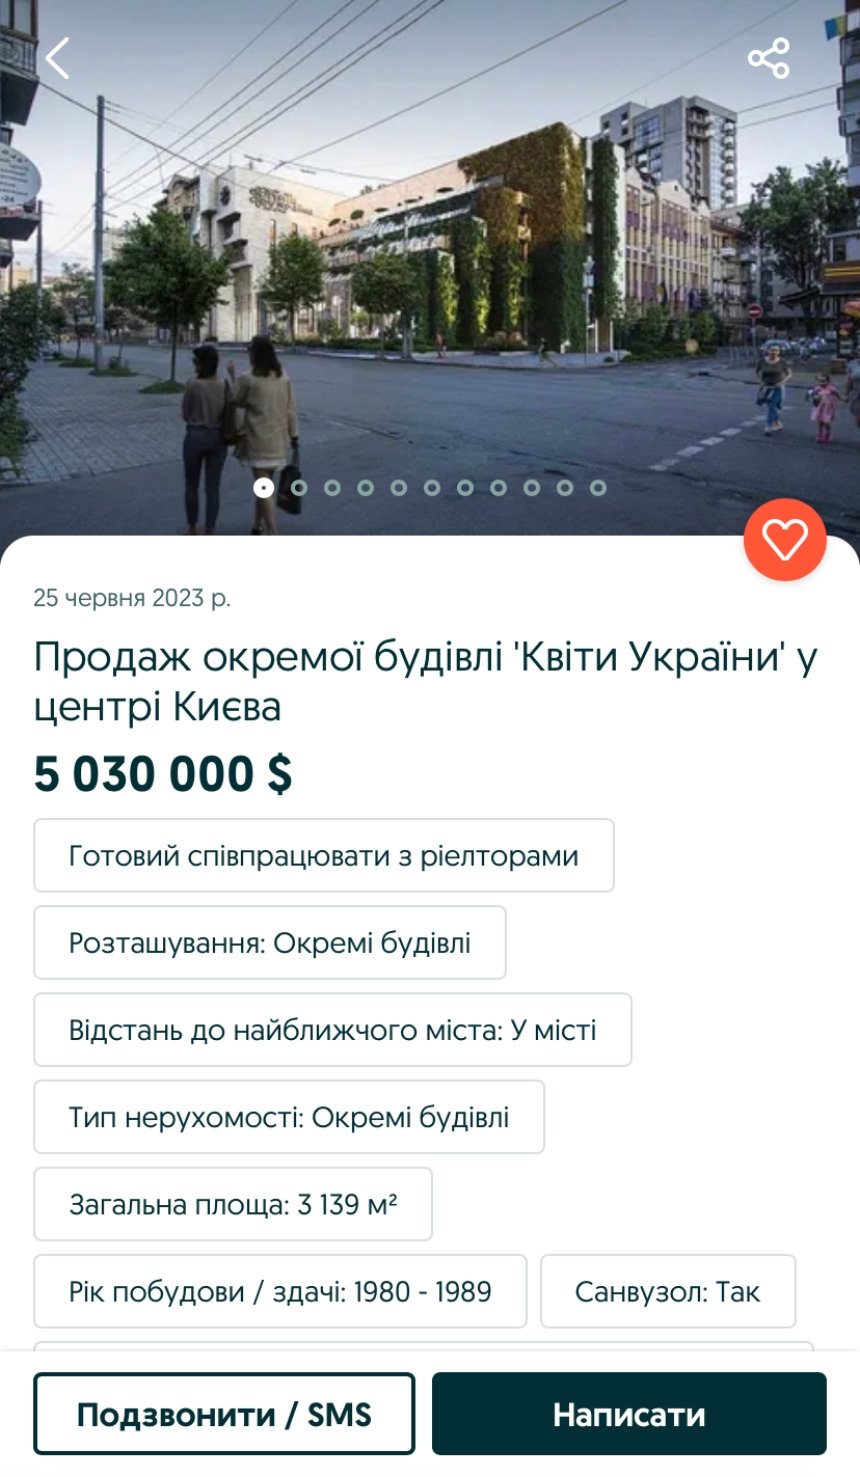 Оголошення про продаж будівлі "Квіти України" на OLX